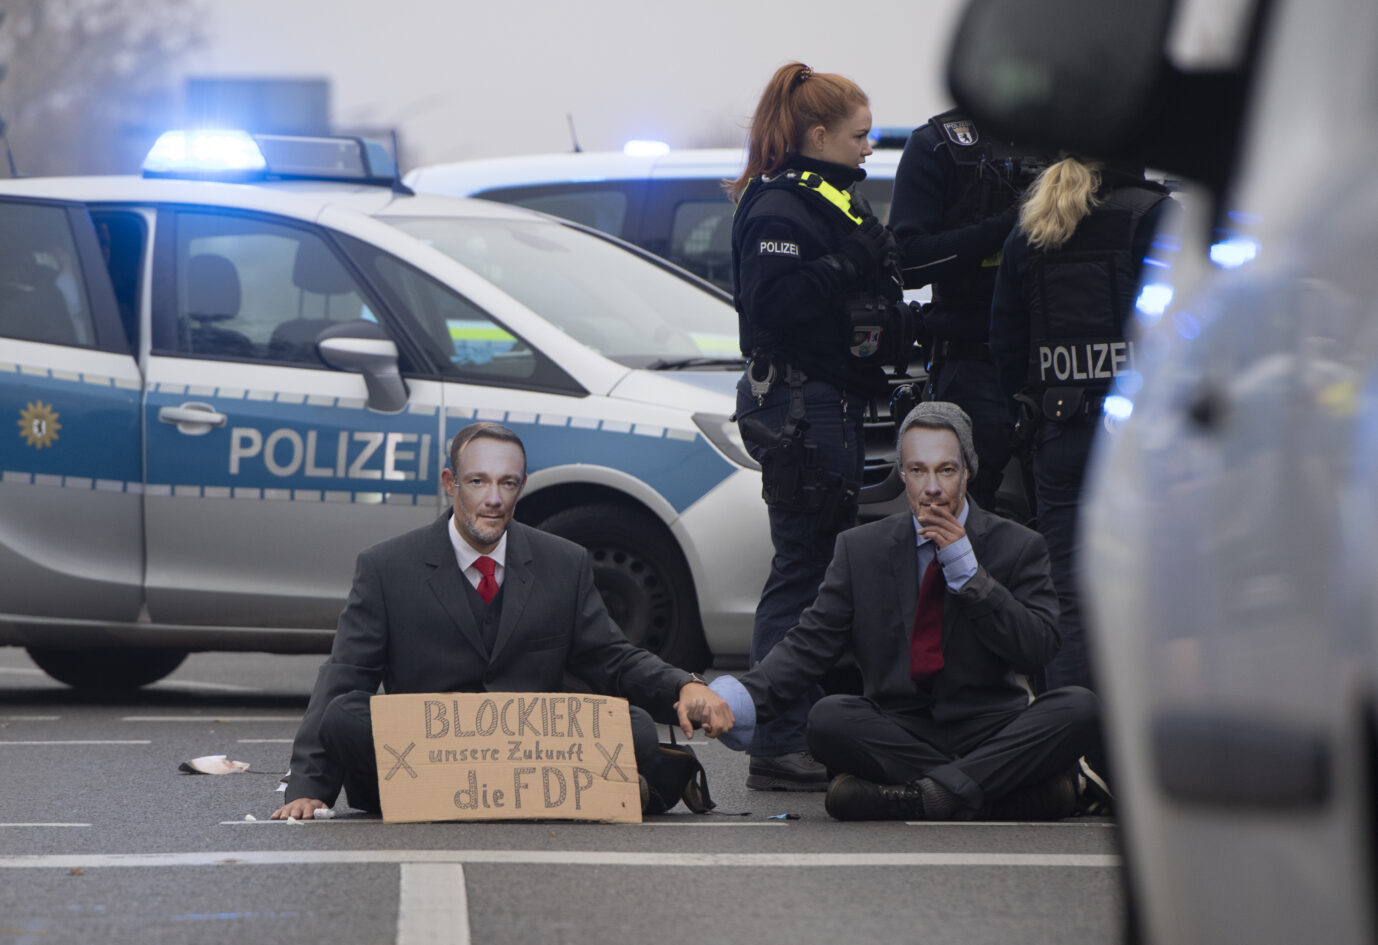 Zwei Mitglieder der "Letzten Generation" sitzen vor einem Polizeiauto auf der Straße. Sie tragen Anzüge und Masken mit dem Gesicht von FDP-Politiker Christian Lindner.